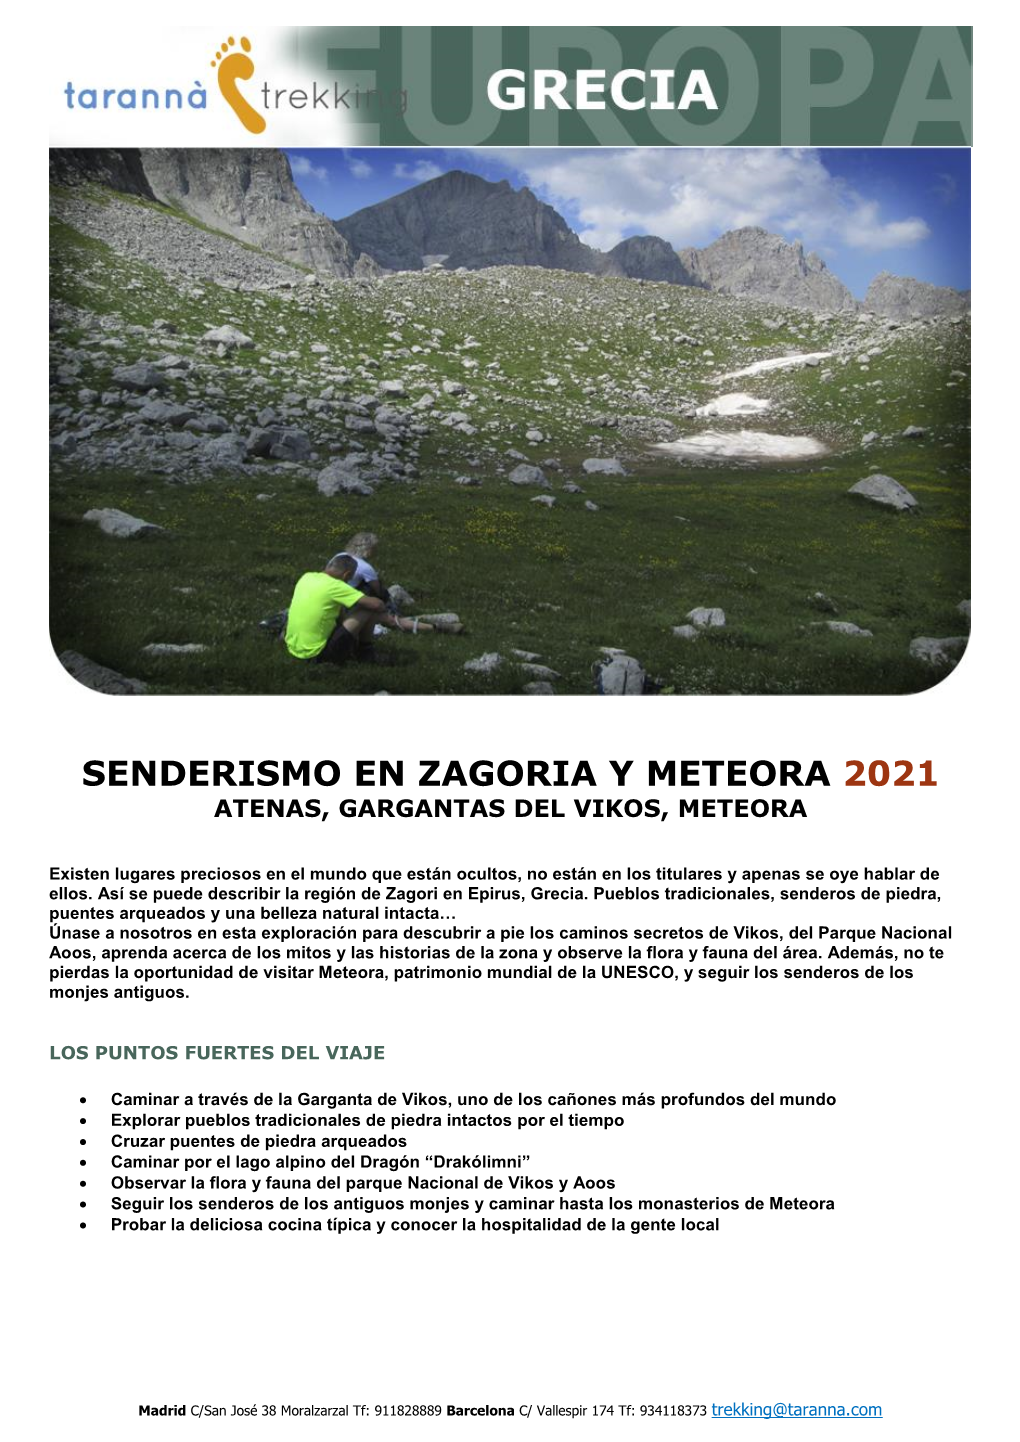 Senderismo En Zagoria Y Meteora 2021 Atenas, Gargantas Del Vikos, Meteora